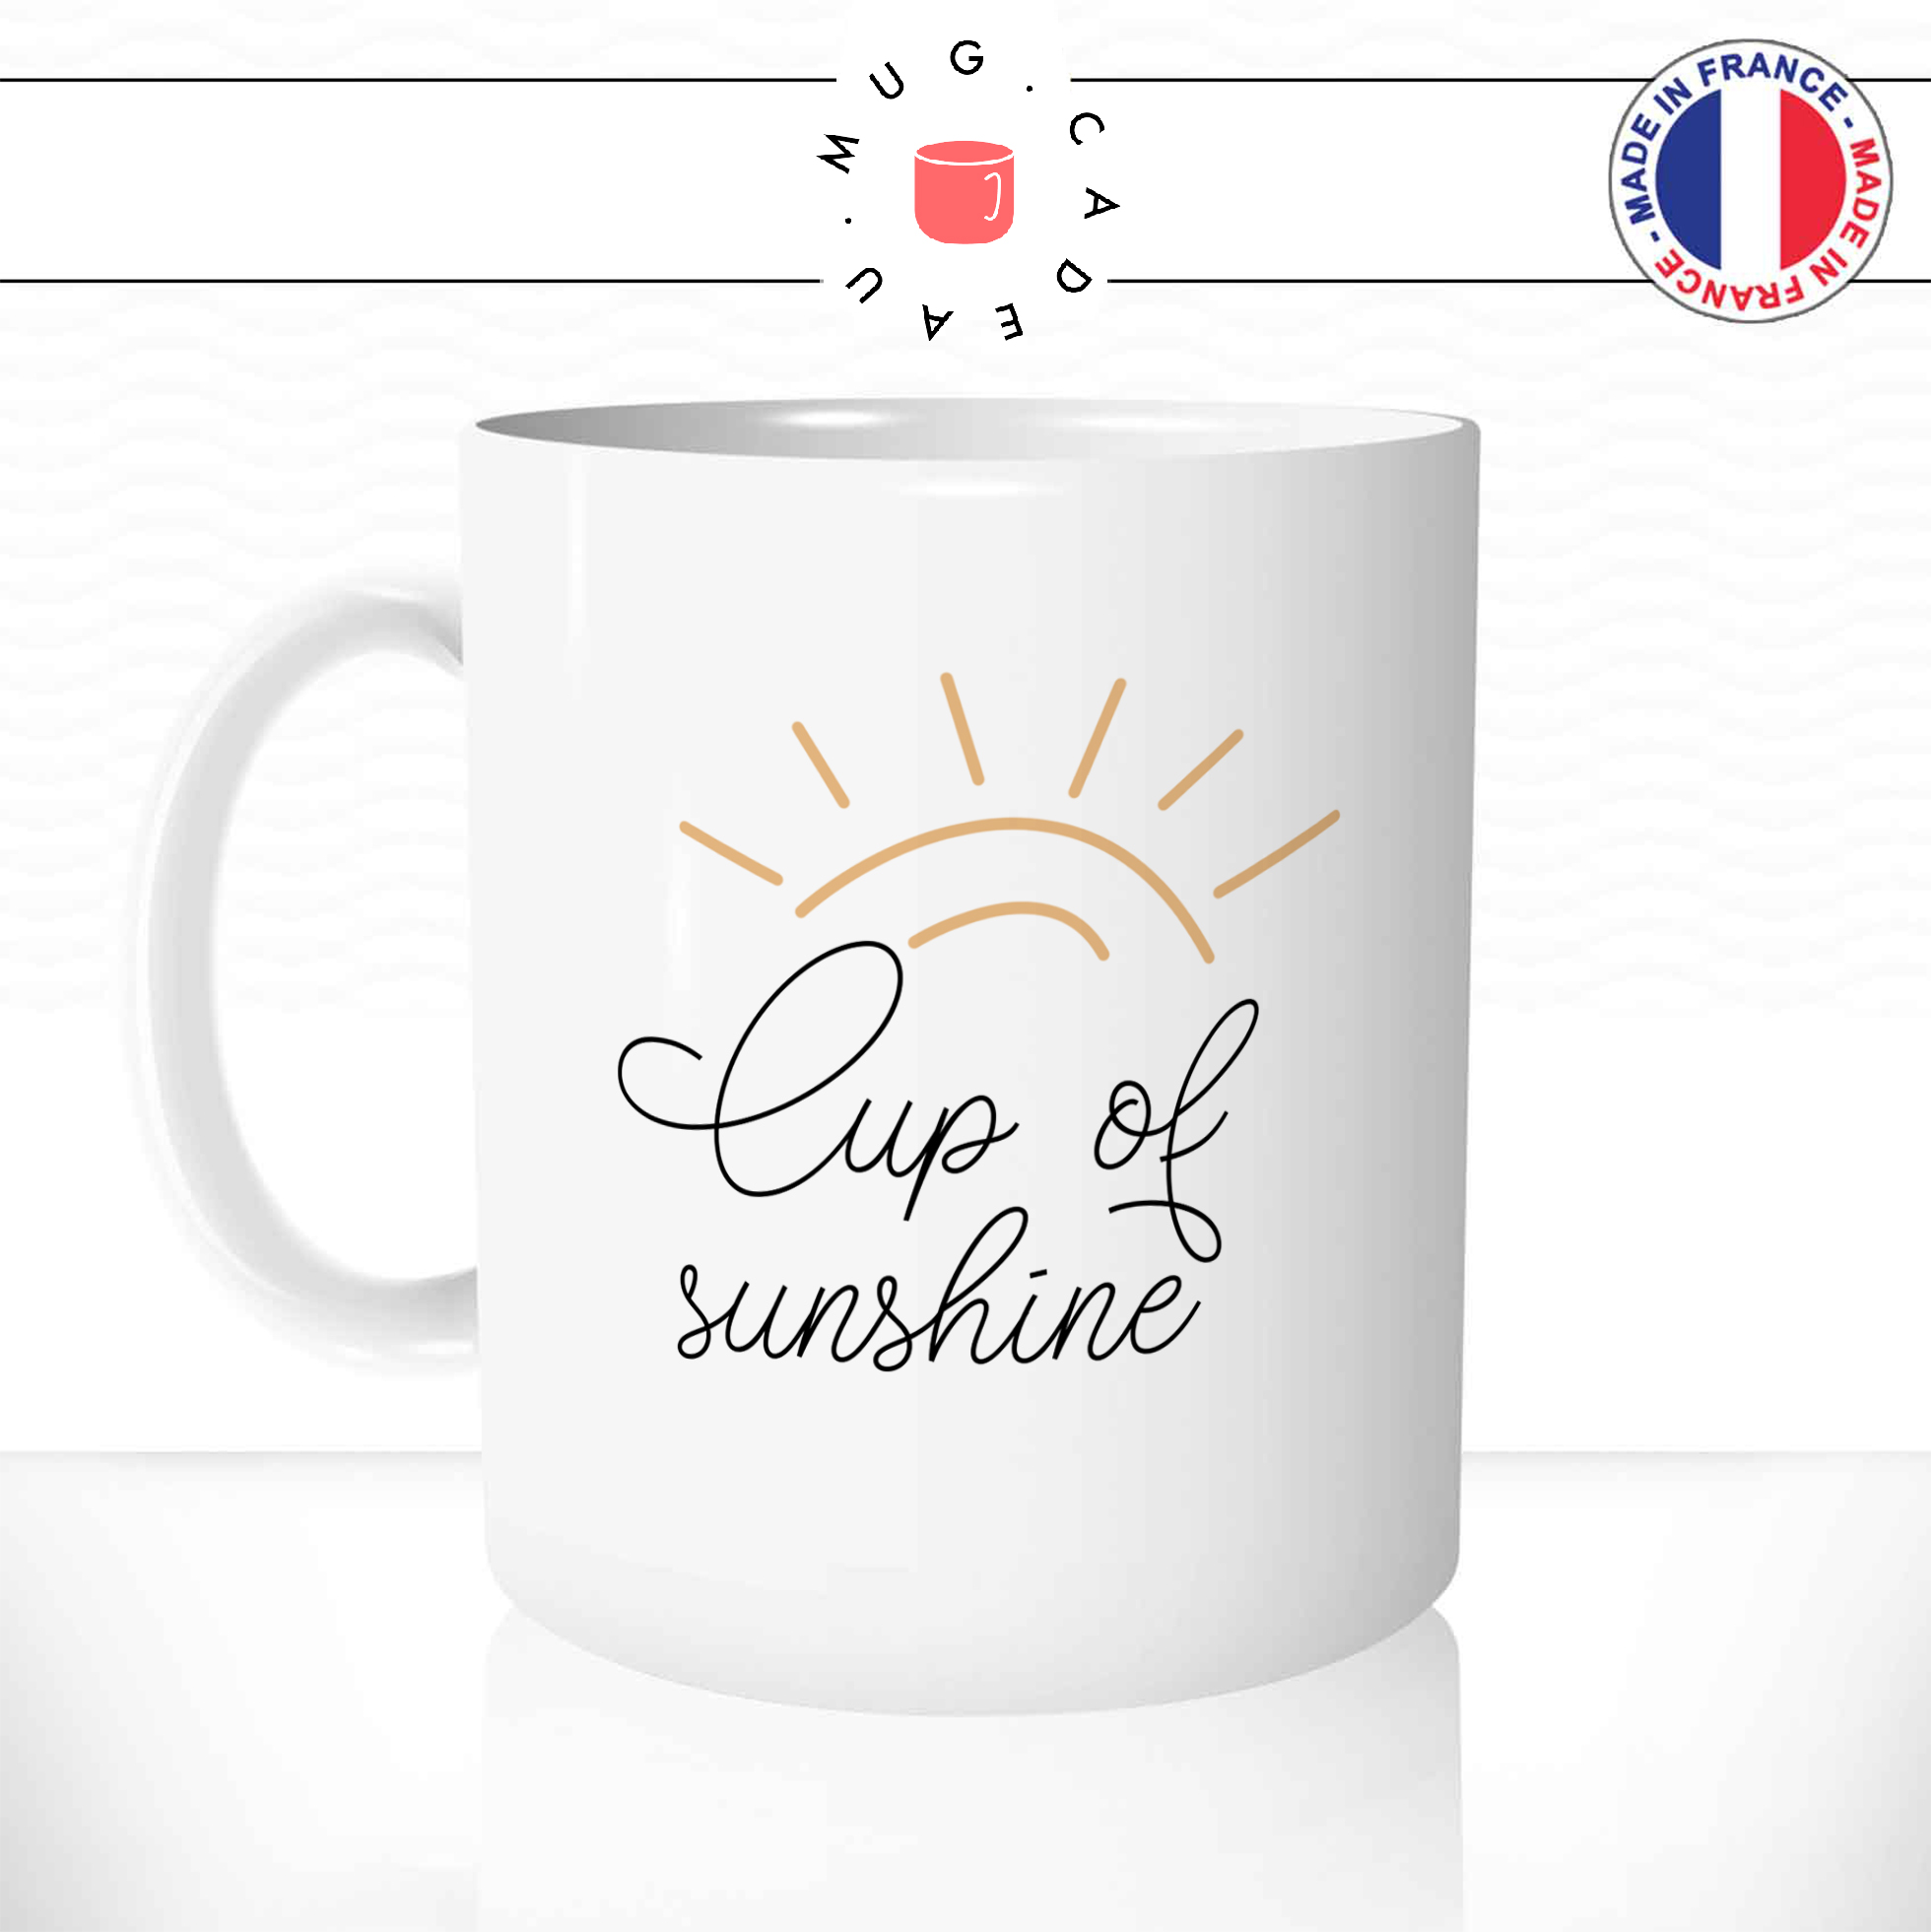 Mug Cup Of Sunshine